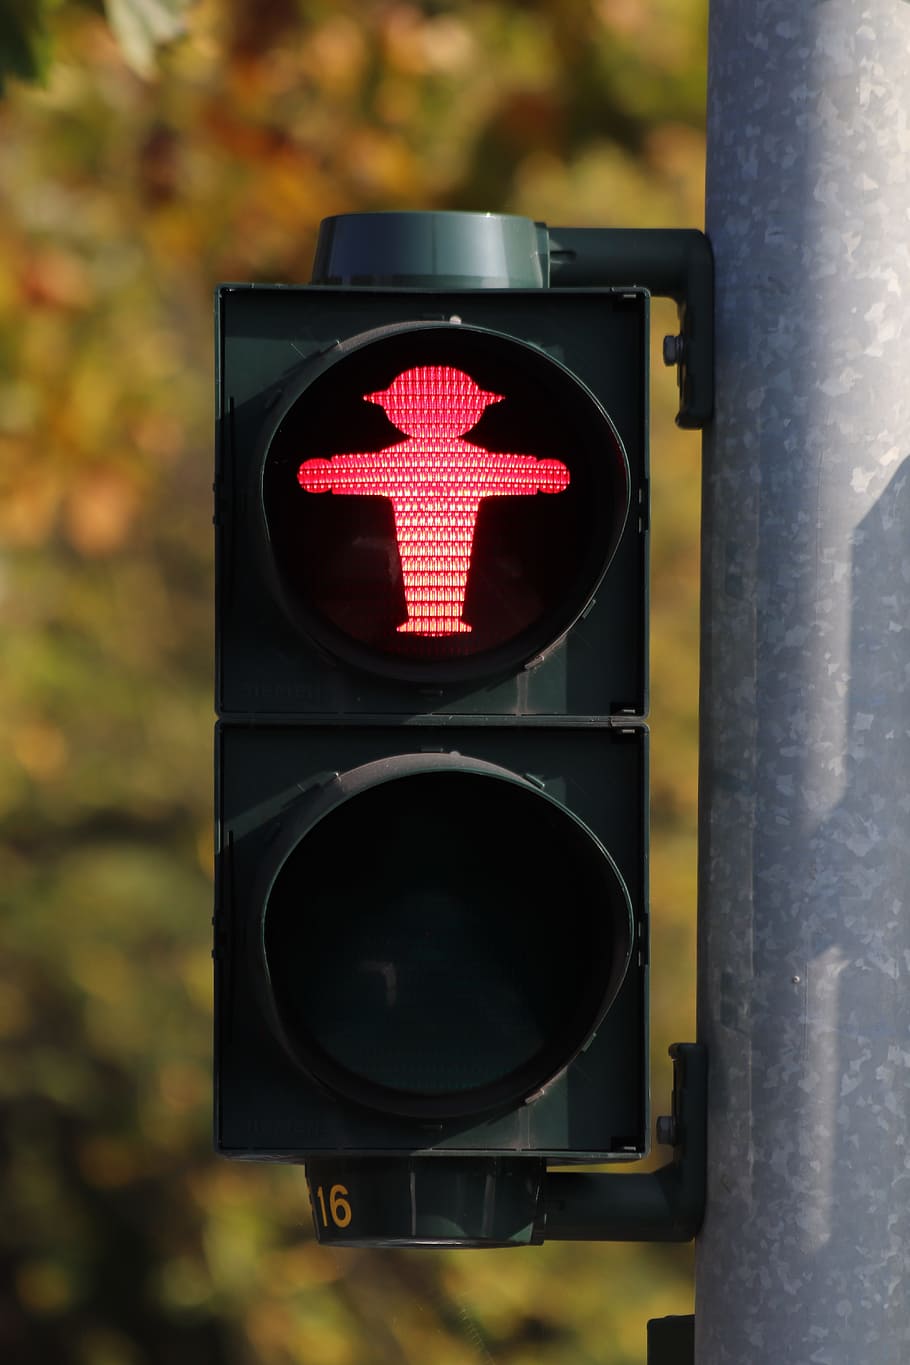 リトル・グリーン・マン, 交通信号, 含む, 赤, 横断歩道, 十字架, 道路標識, 光信号, ベルリン, ドイツ